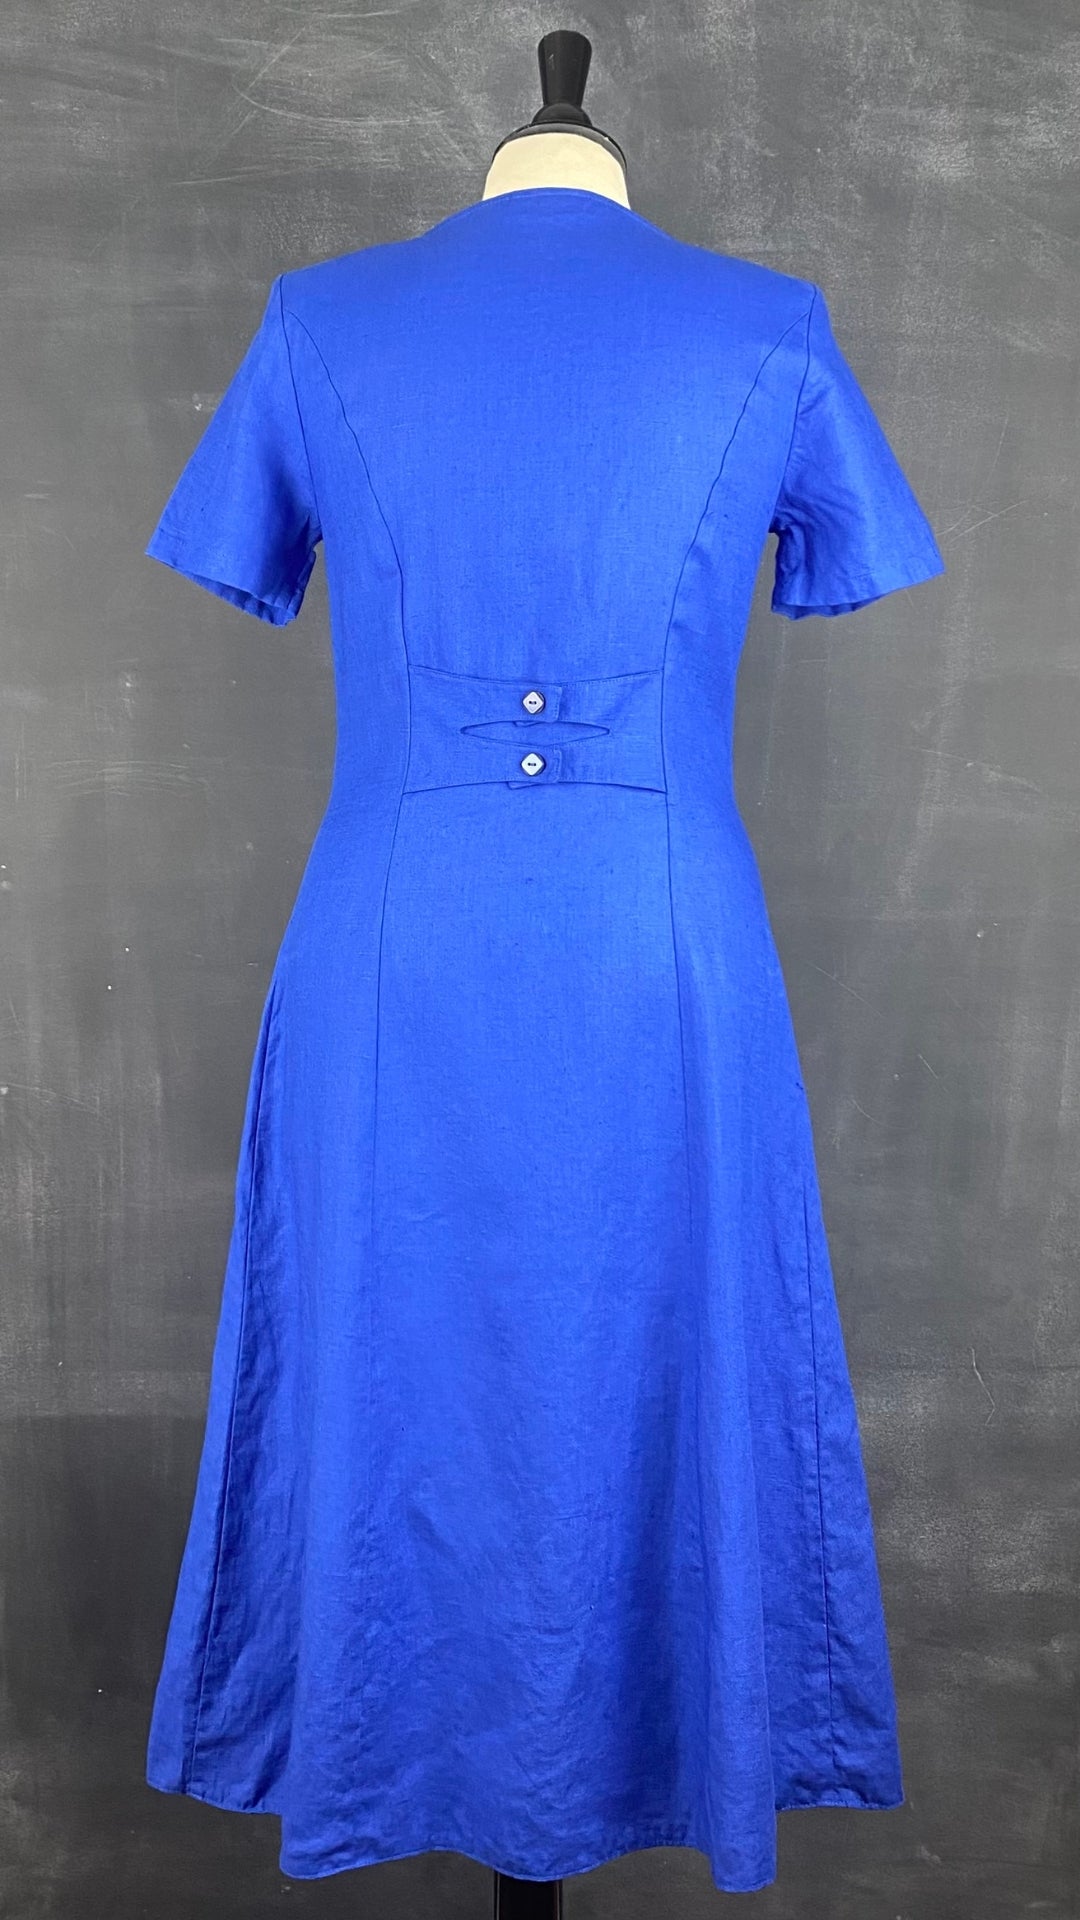 Robe bleue boutonnée en lin Steilmann, taille 6 (xs/s). Vue de dos.